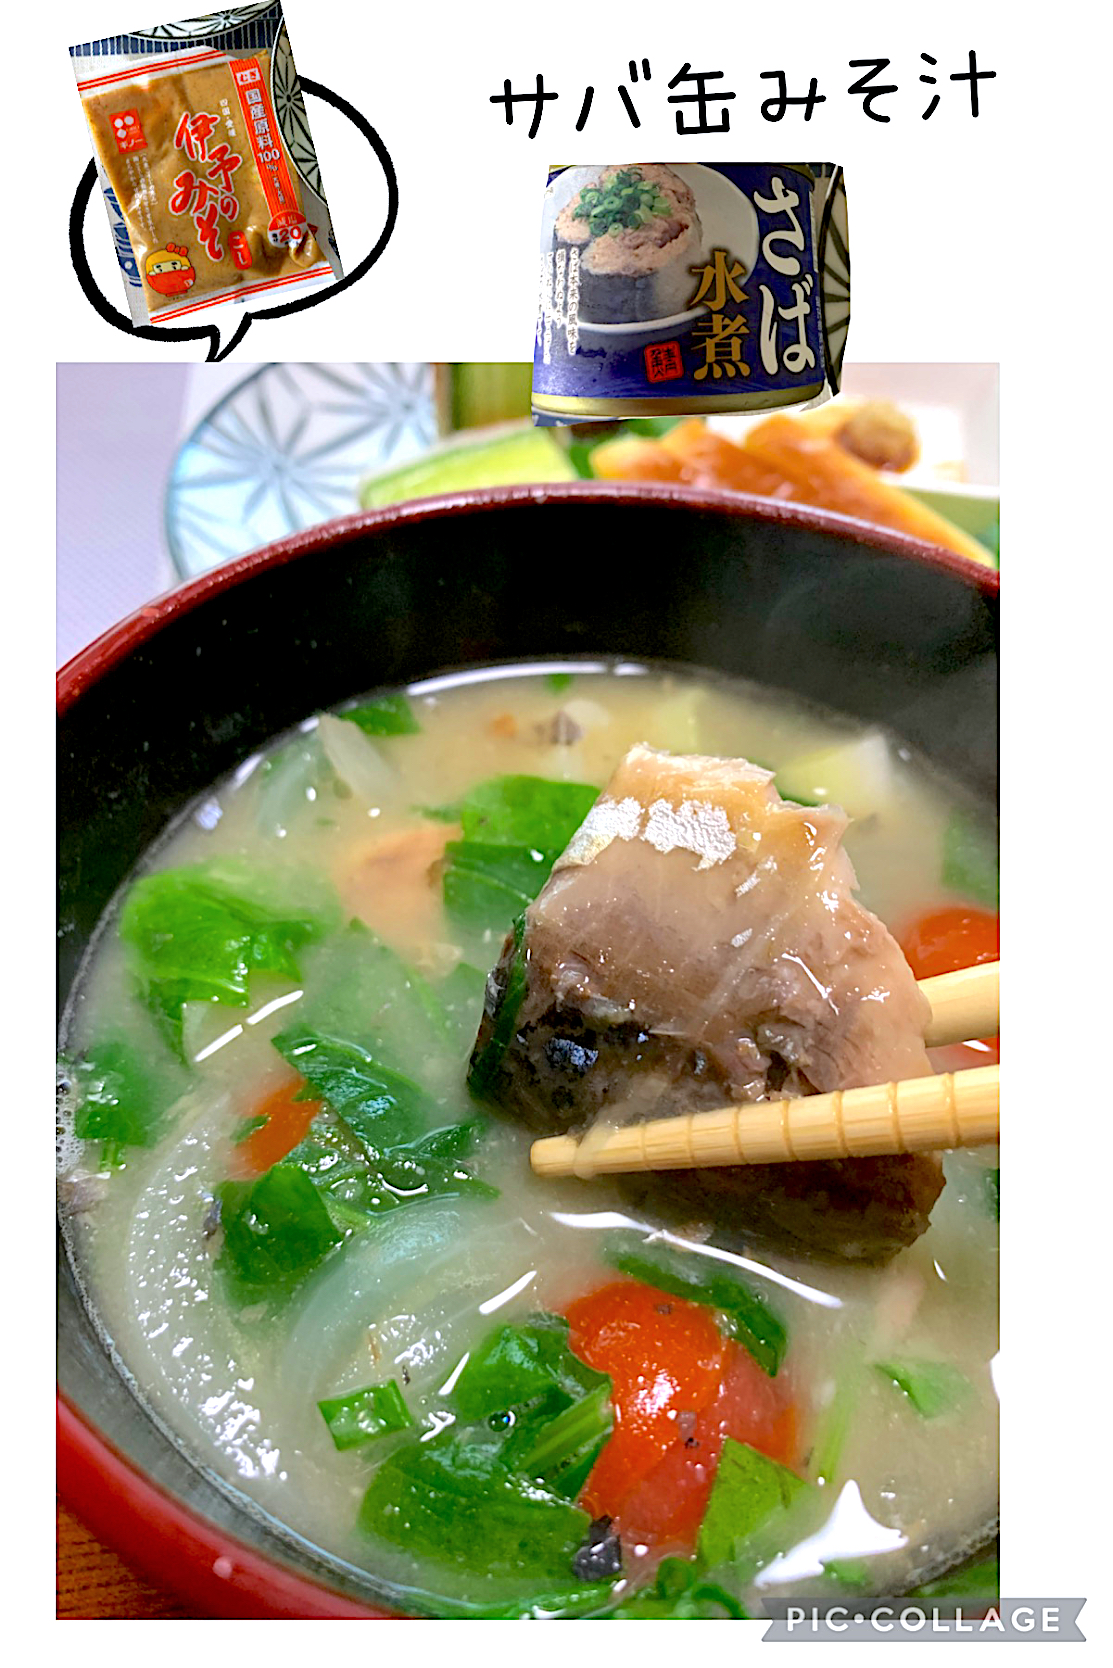 サミカさんの料理 サバ缶味噌汁は伊予の味噌